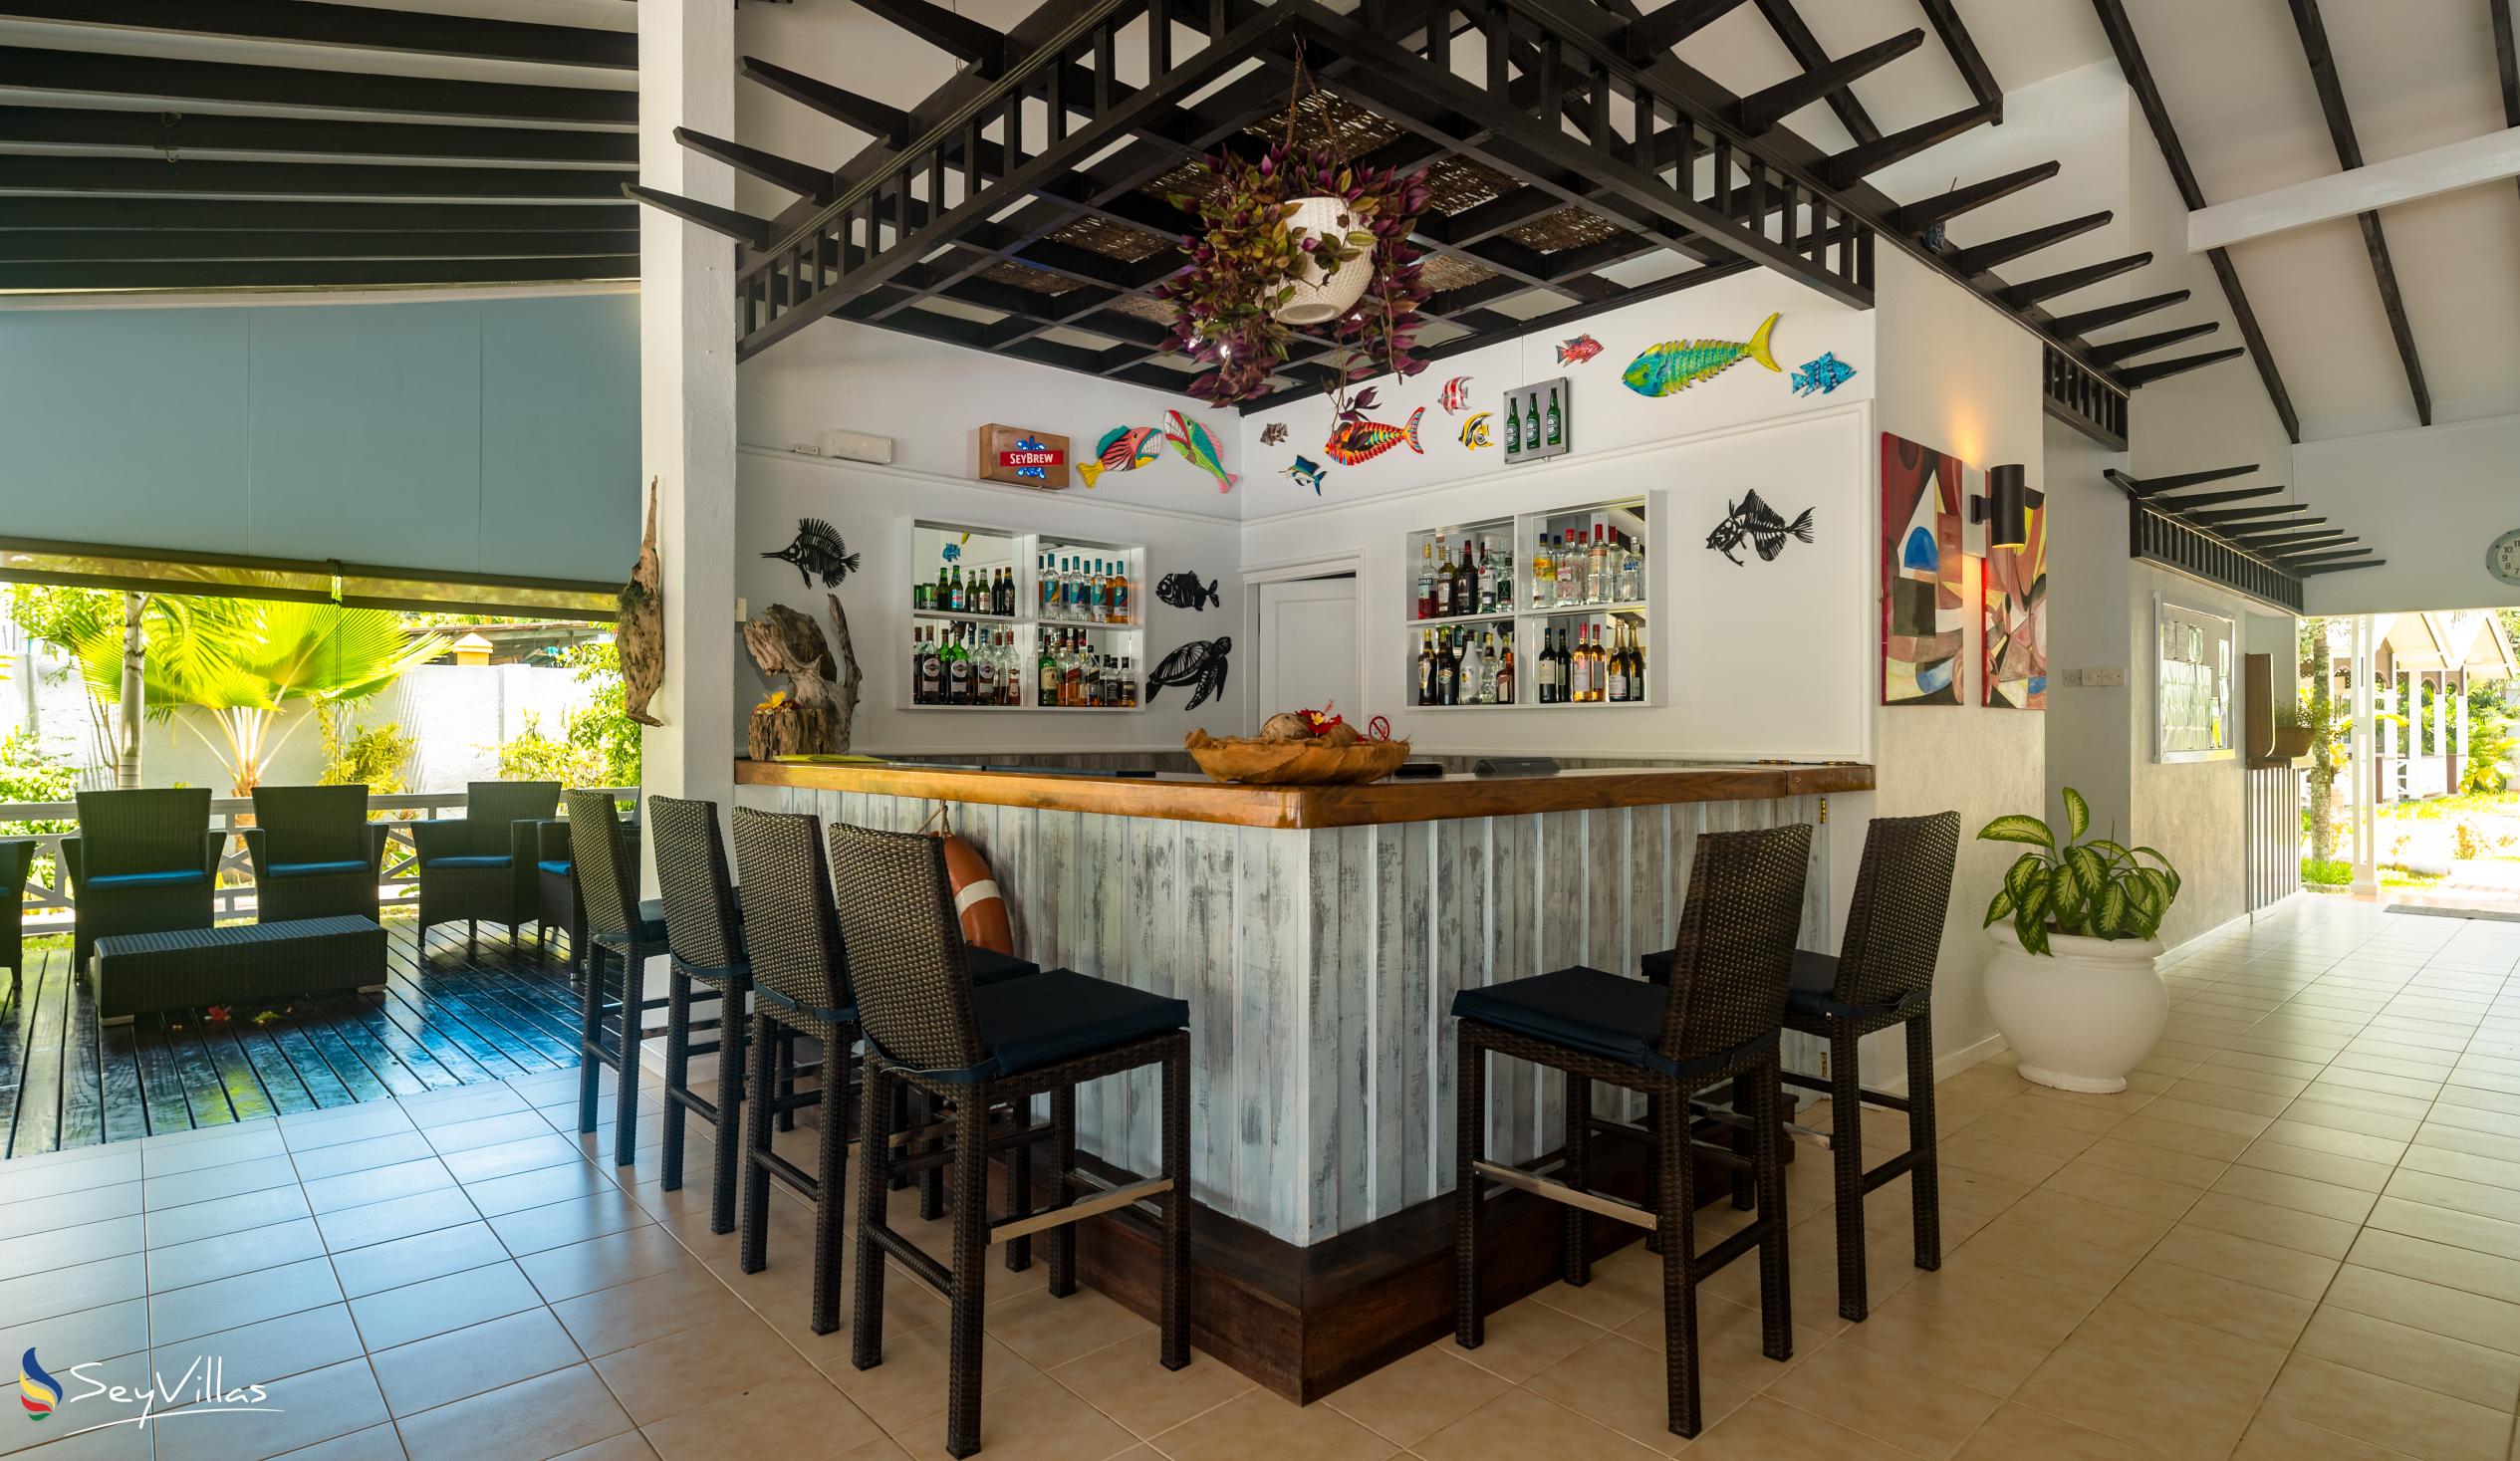 Photo 47: Hotel La Roussette - Indoor area - Mahé (Seychelles)